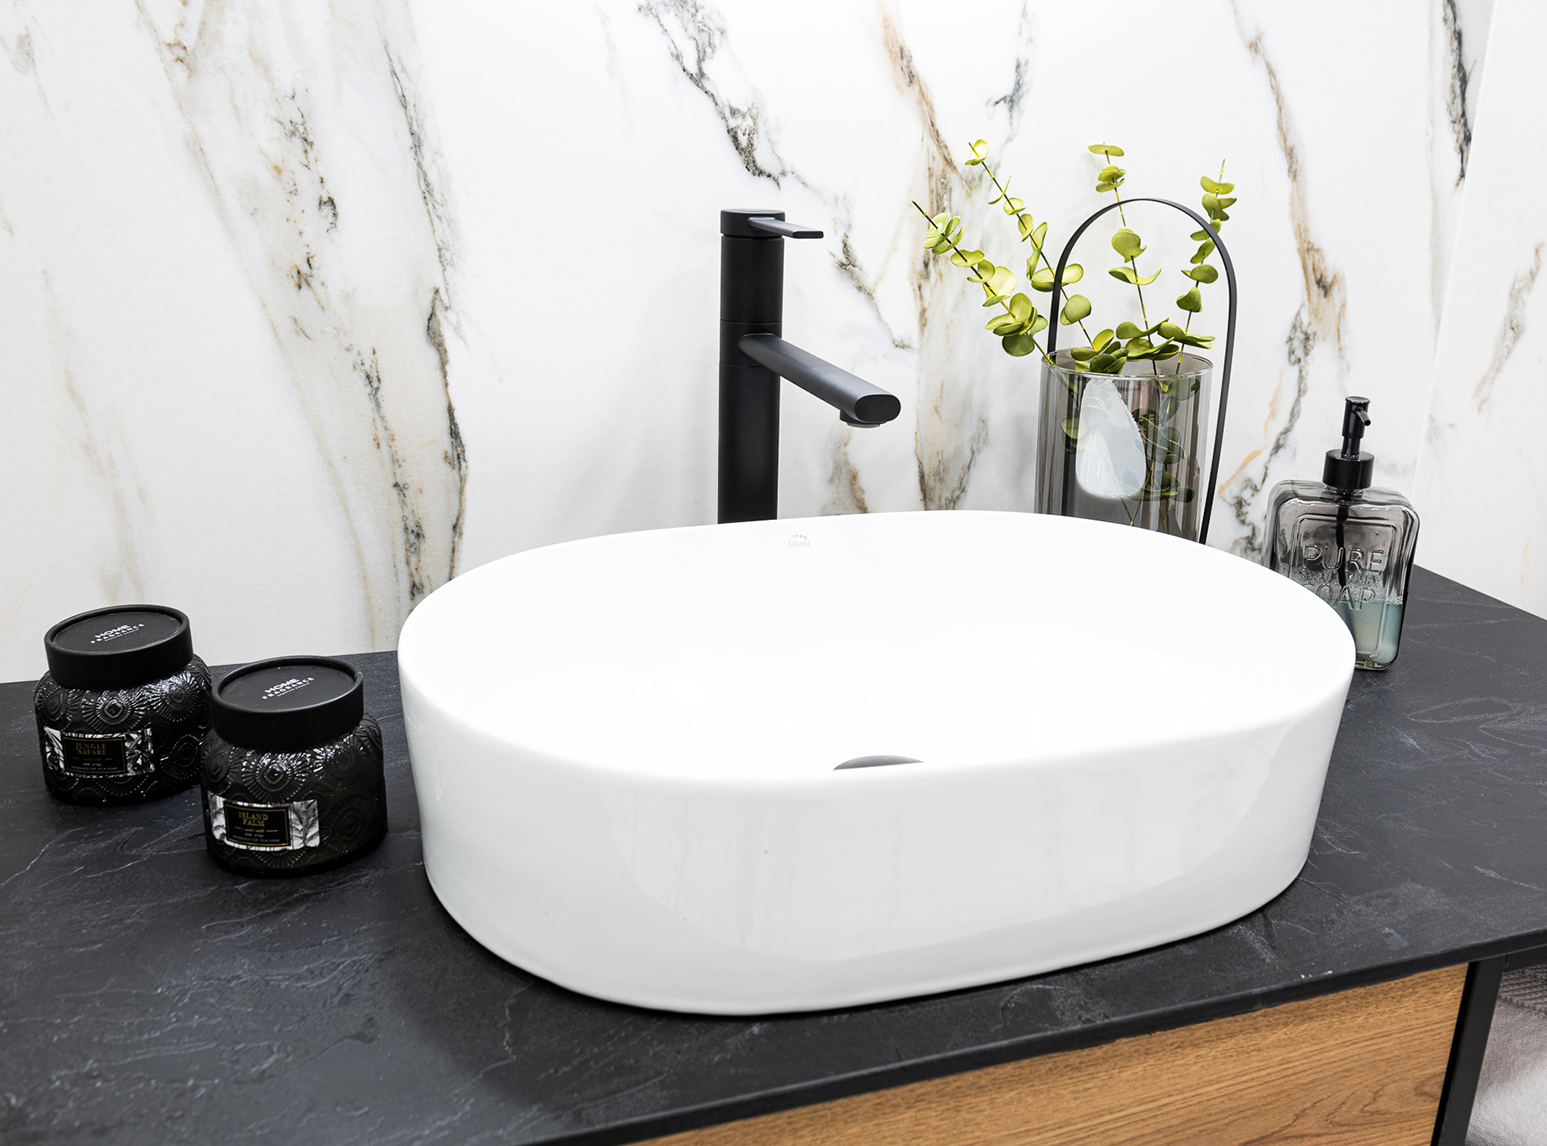 Desna - ceramic countertop Laveo - washbasin